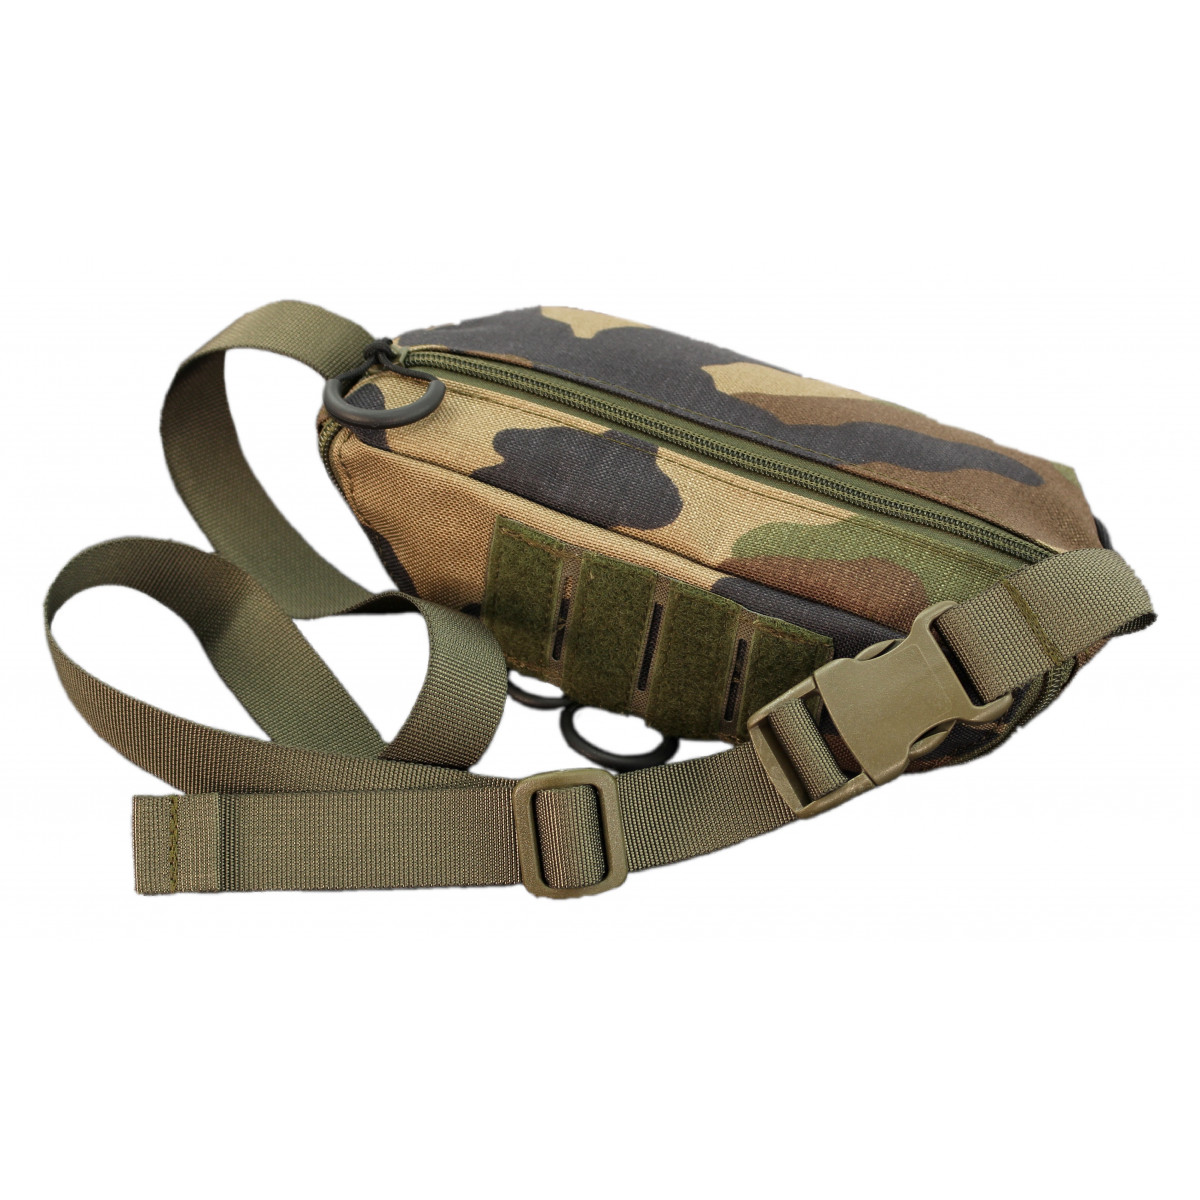 Order waist bag / fanny pack in tactical design online